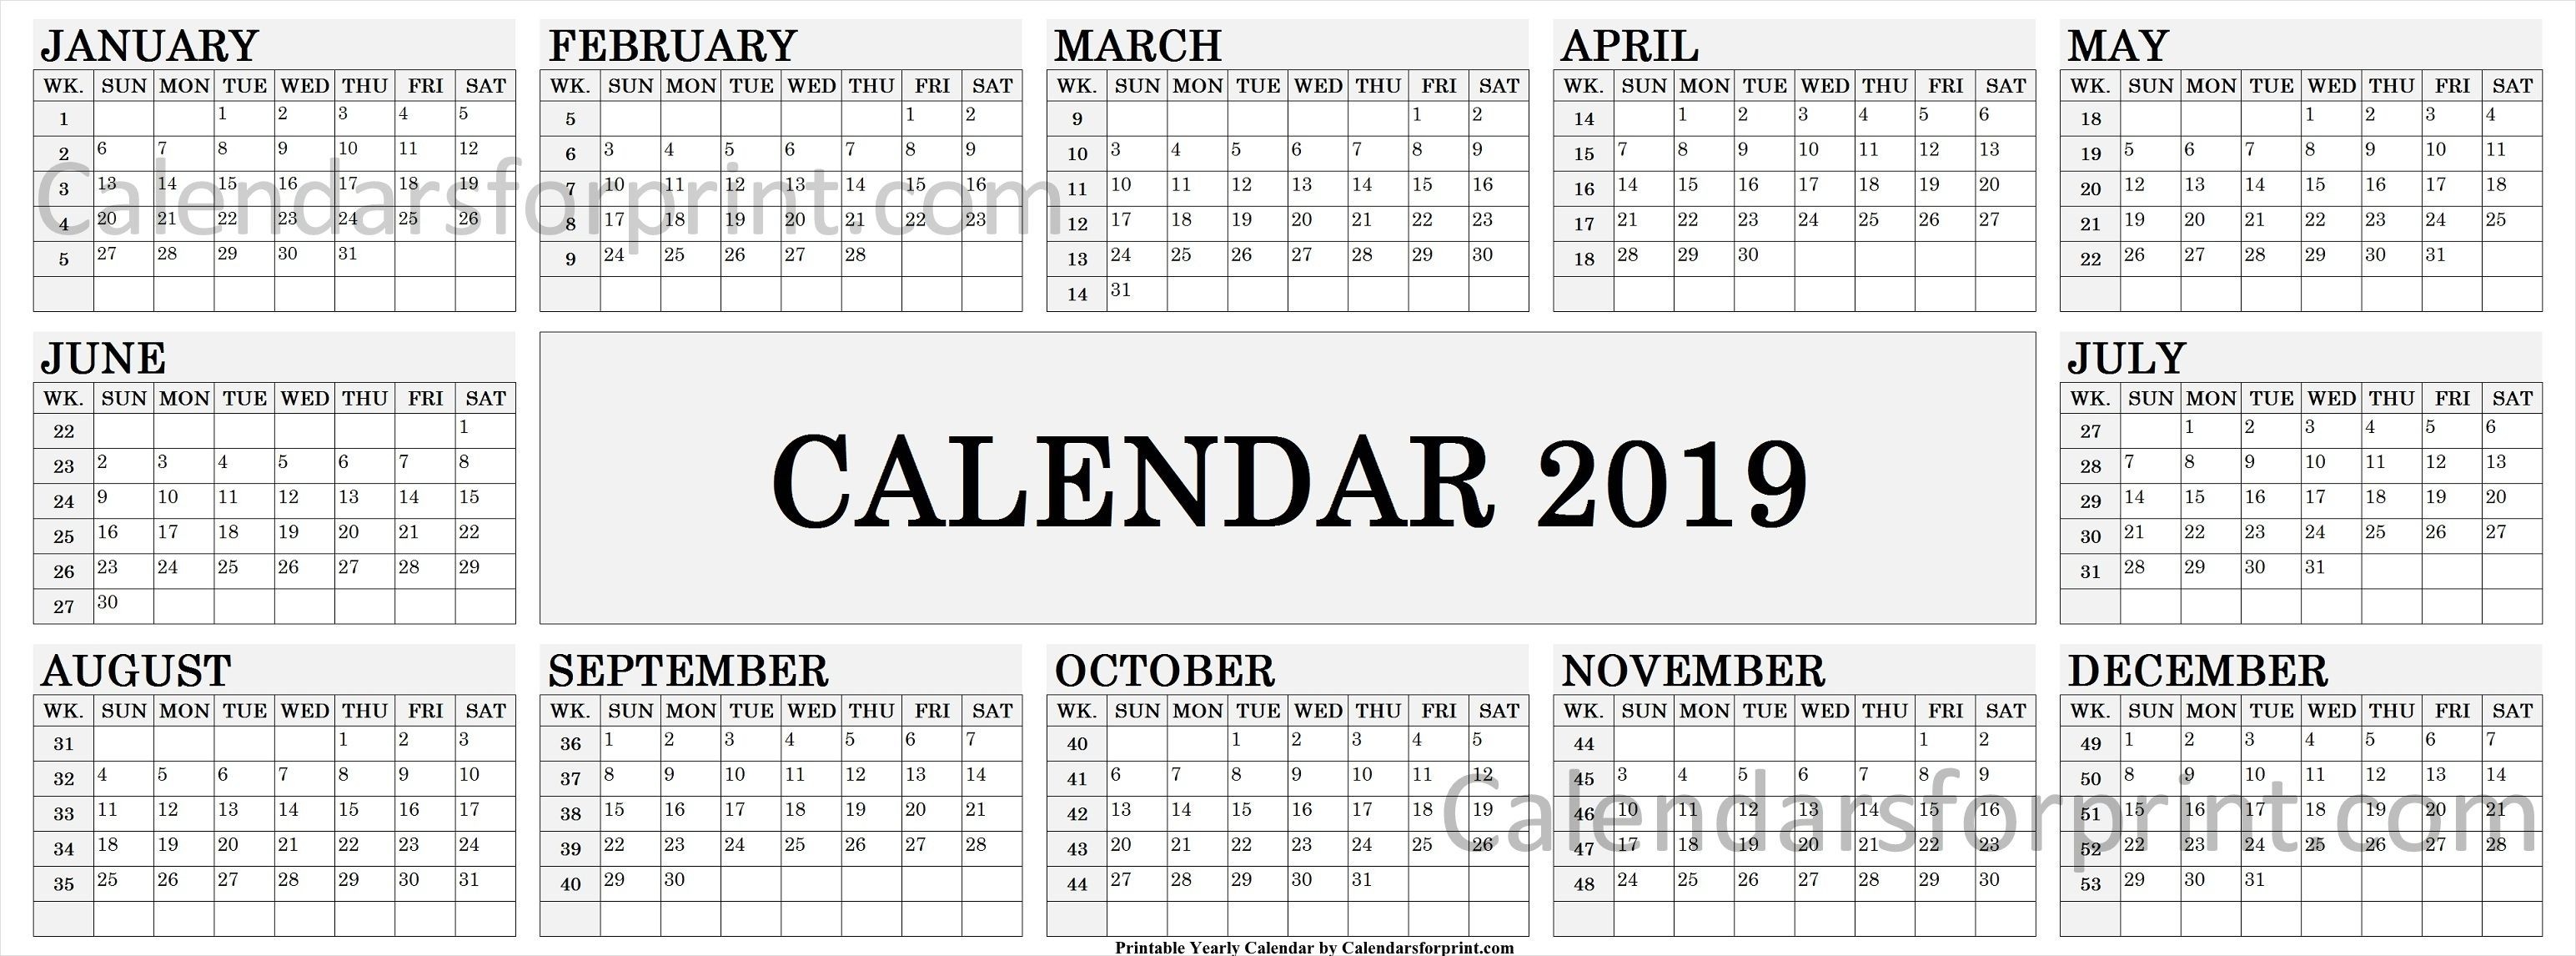 2019 Calendar By Week | Calendar 2019 With Week Numbers-Blank Calendar With Week Numbers